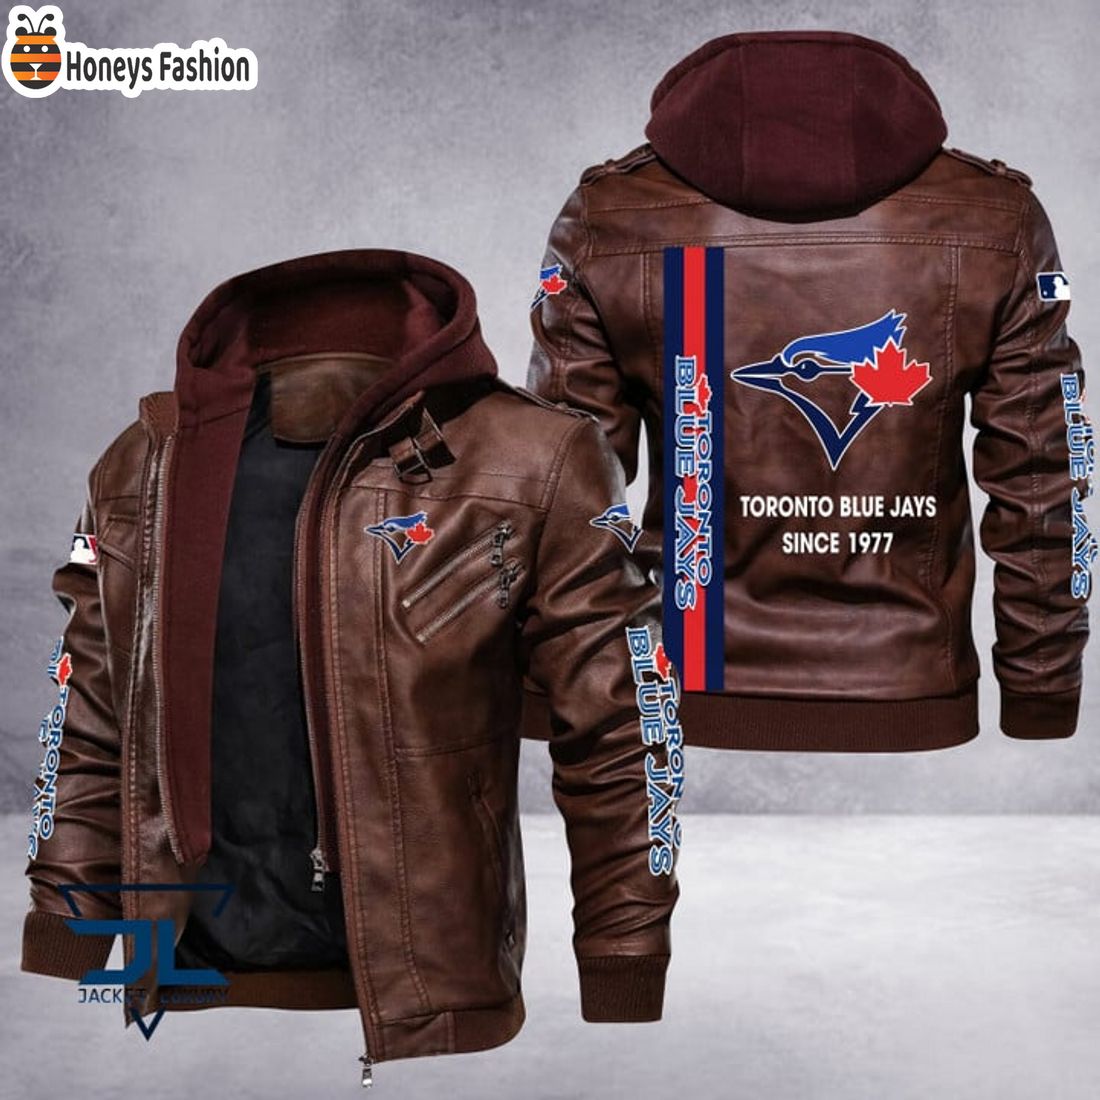 HOT Toronto Blue Jays MLB Luxury Leather Jacket